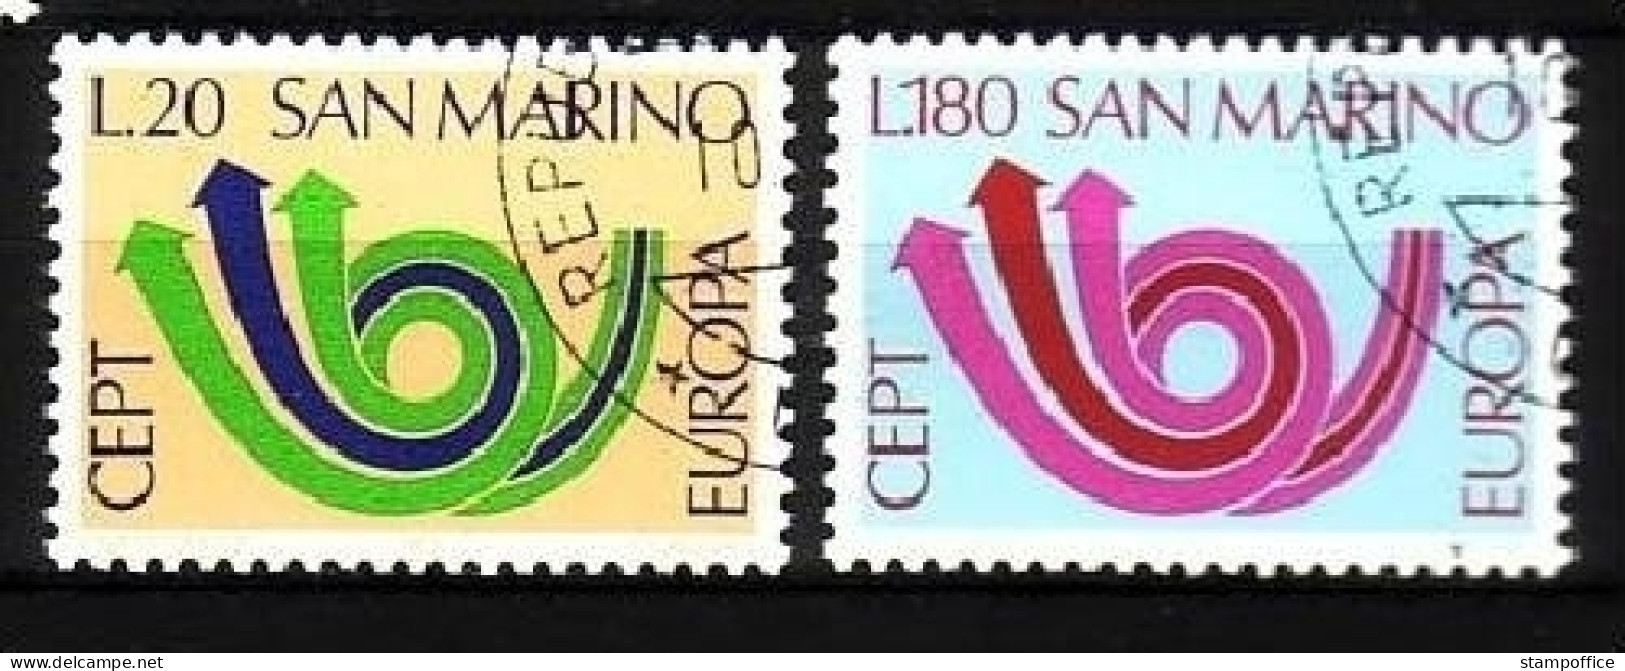 SAN MARINO MI-NR. 1029-1030 GESTEMPELT(USED) EUROPA 1973 POSTHORN - 1973